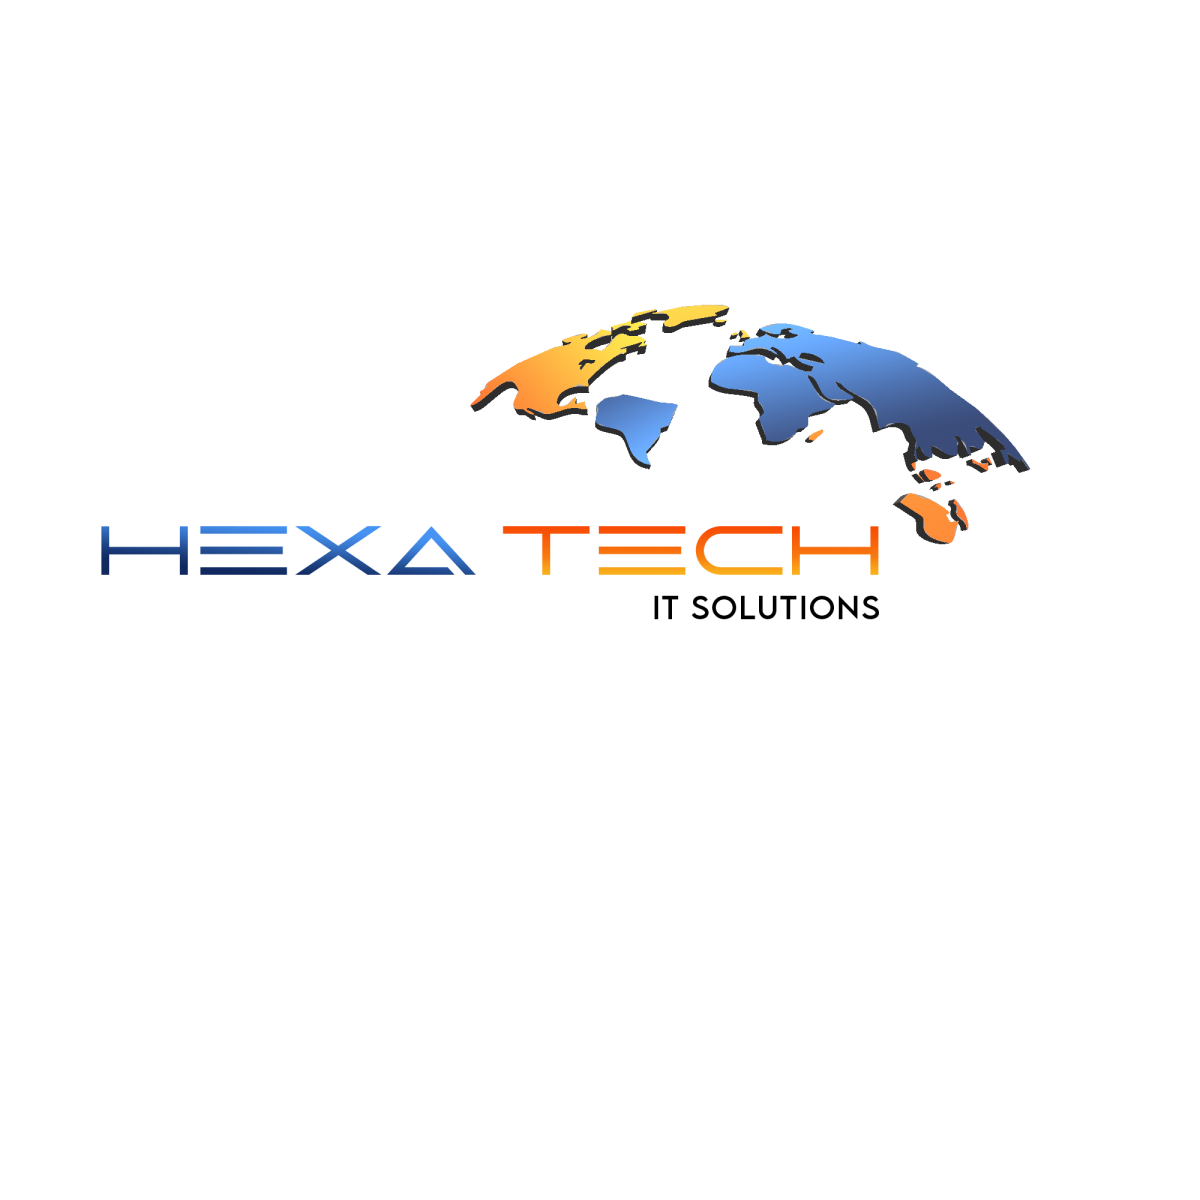 hexa tec logo final copy (3)